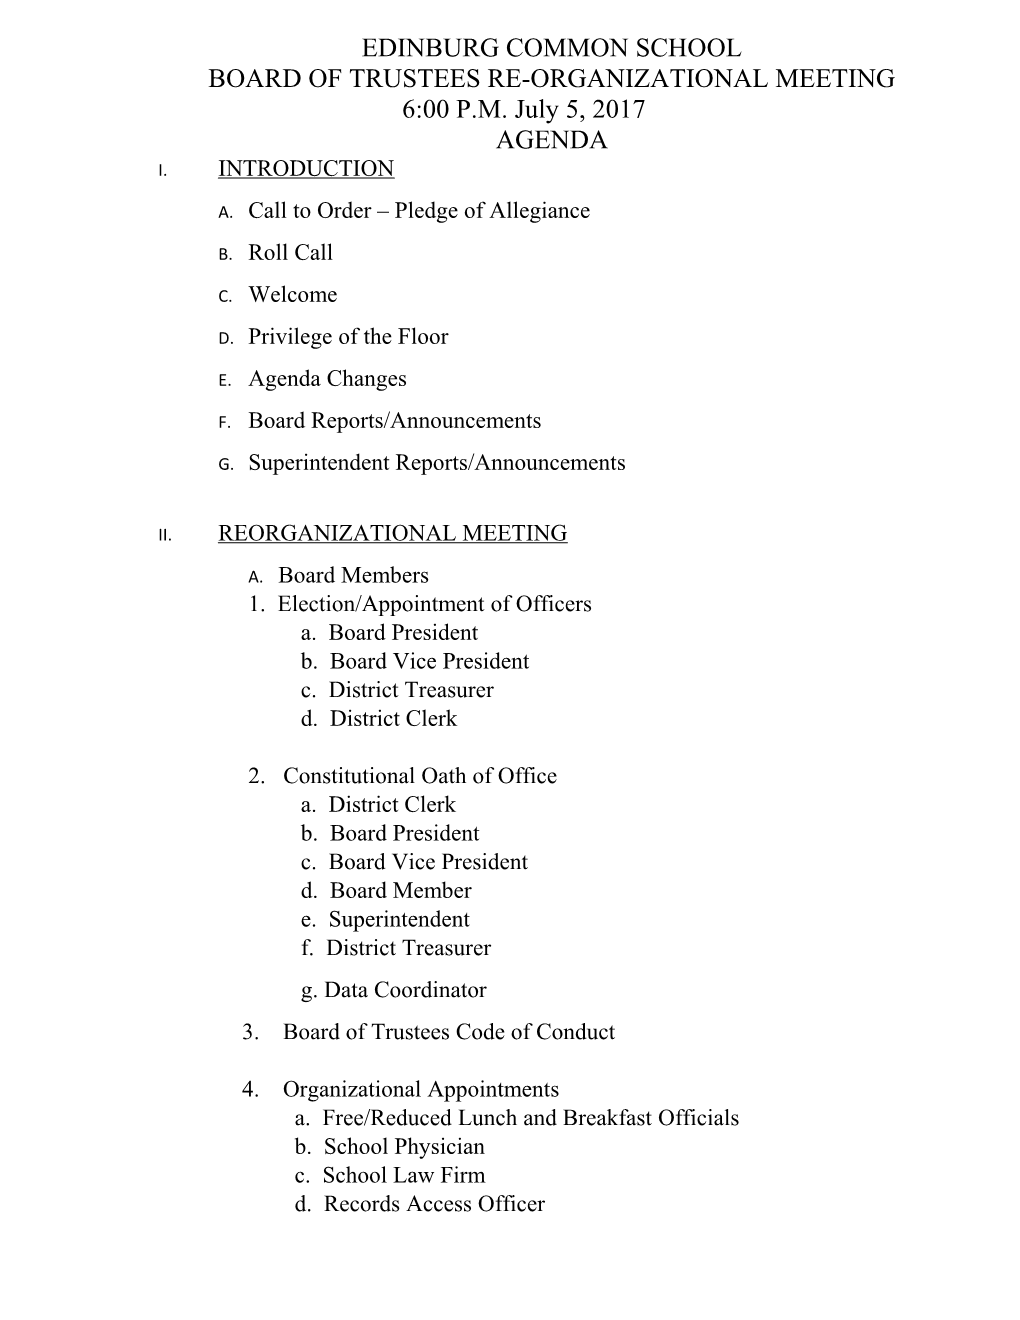 Board of Trustees Re-Organizational Meeting